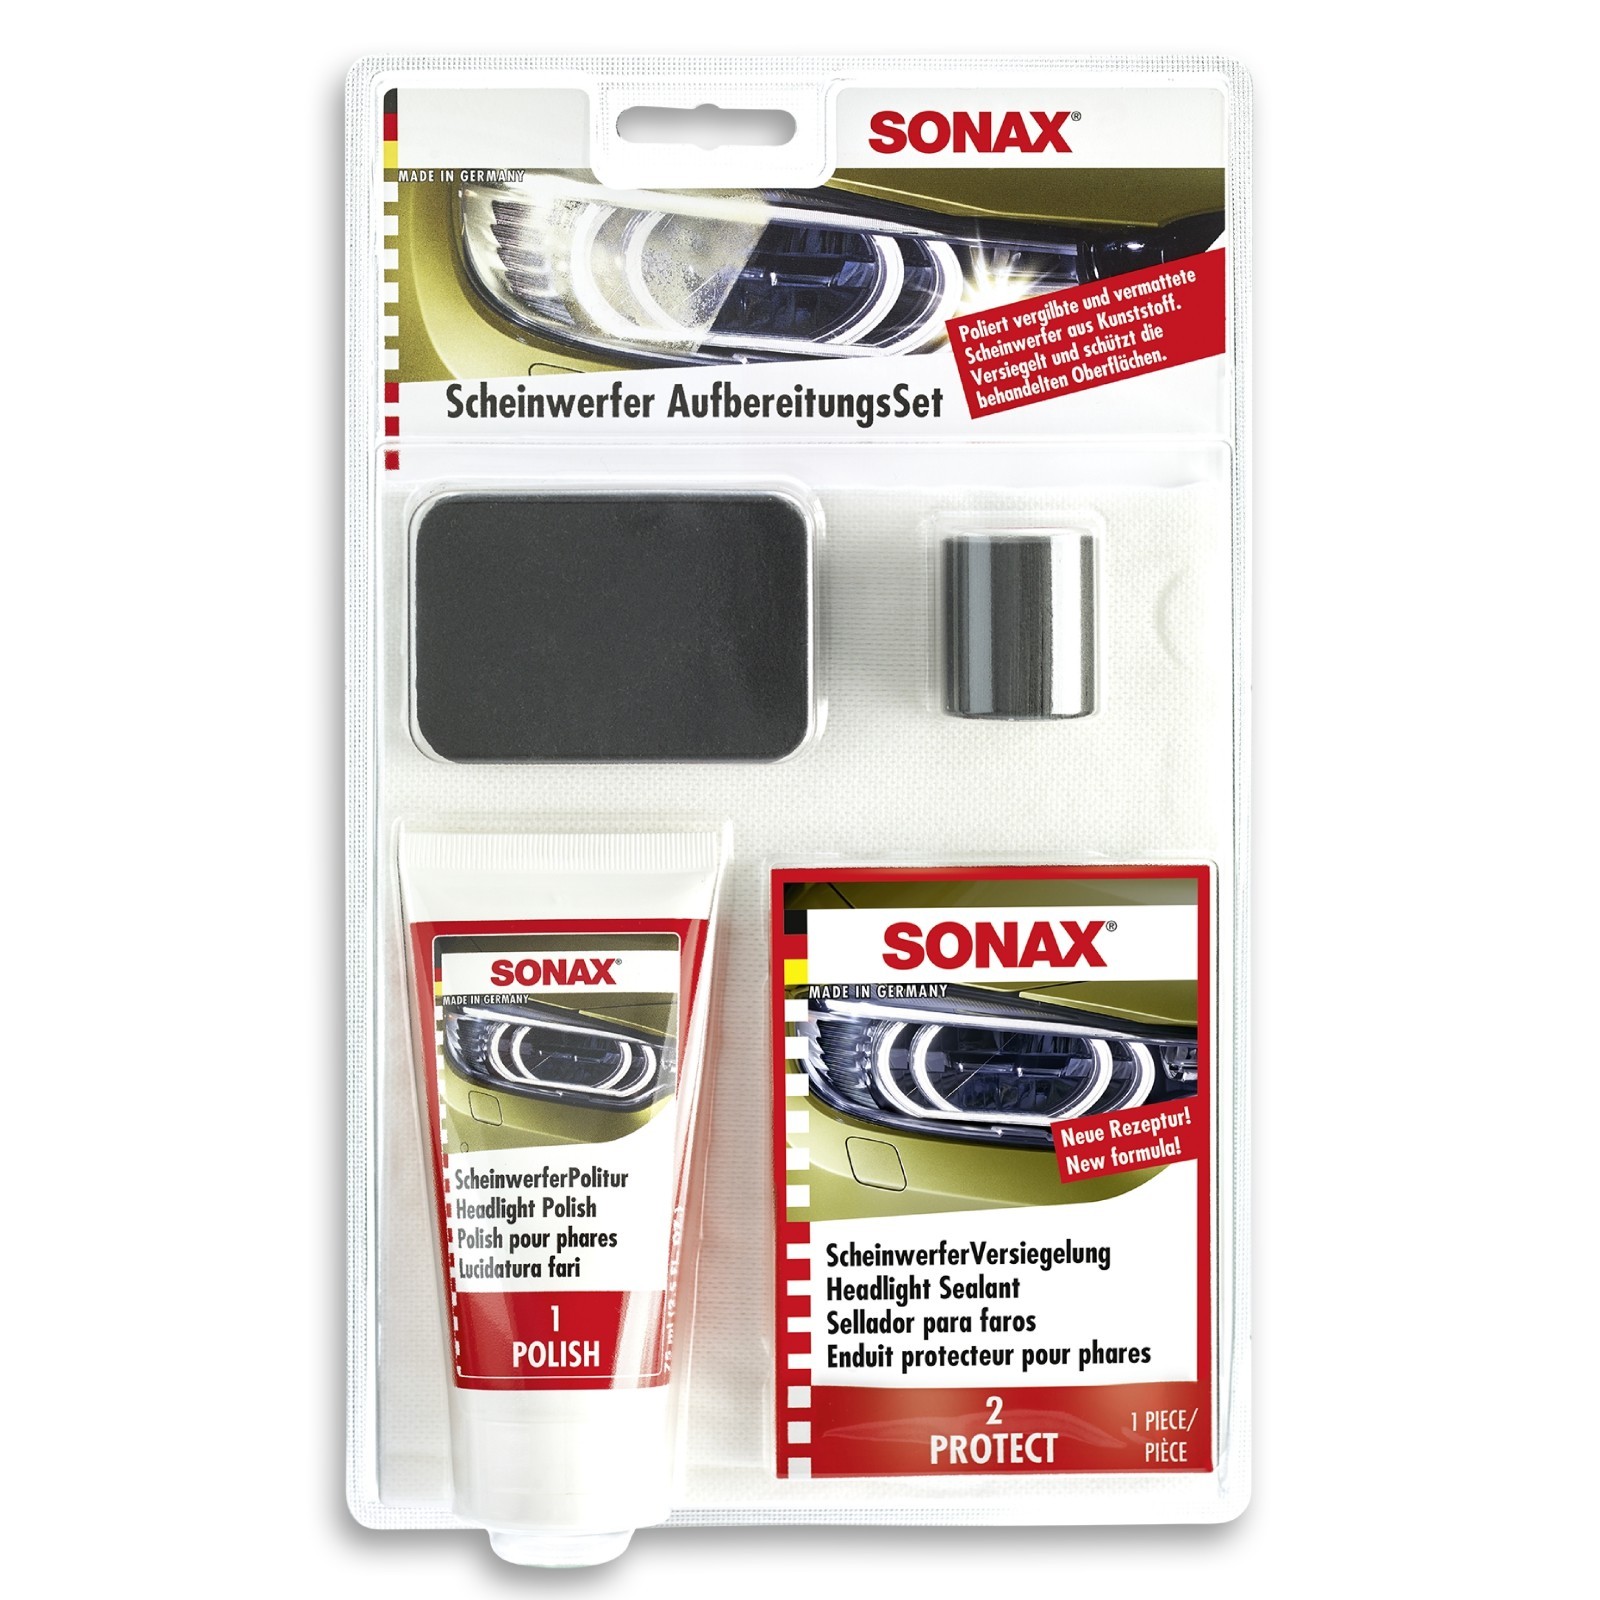 SONAX Aufbereitungs-Set, Scheinwerfer AufbereitungsSet 0,085 L (04059410)